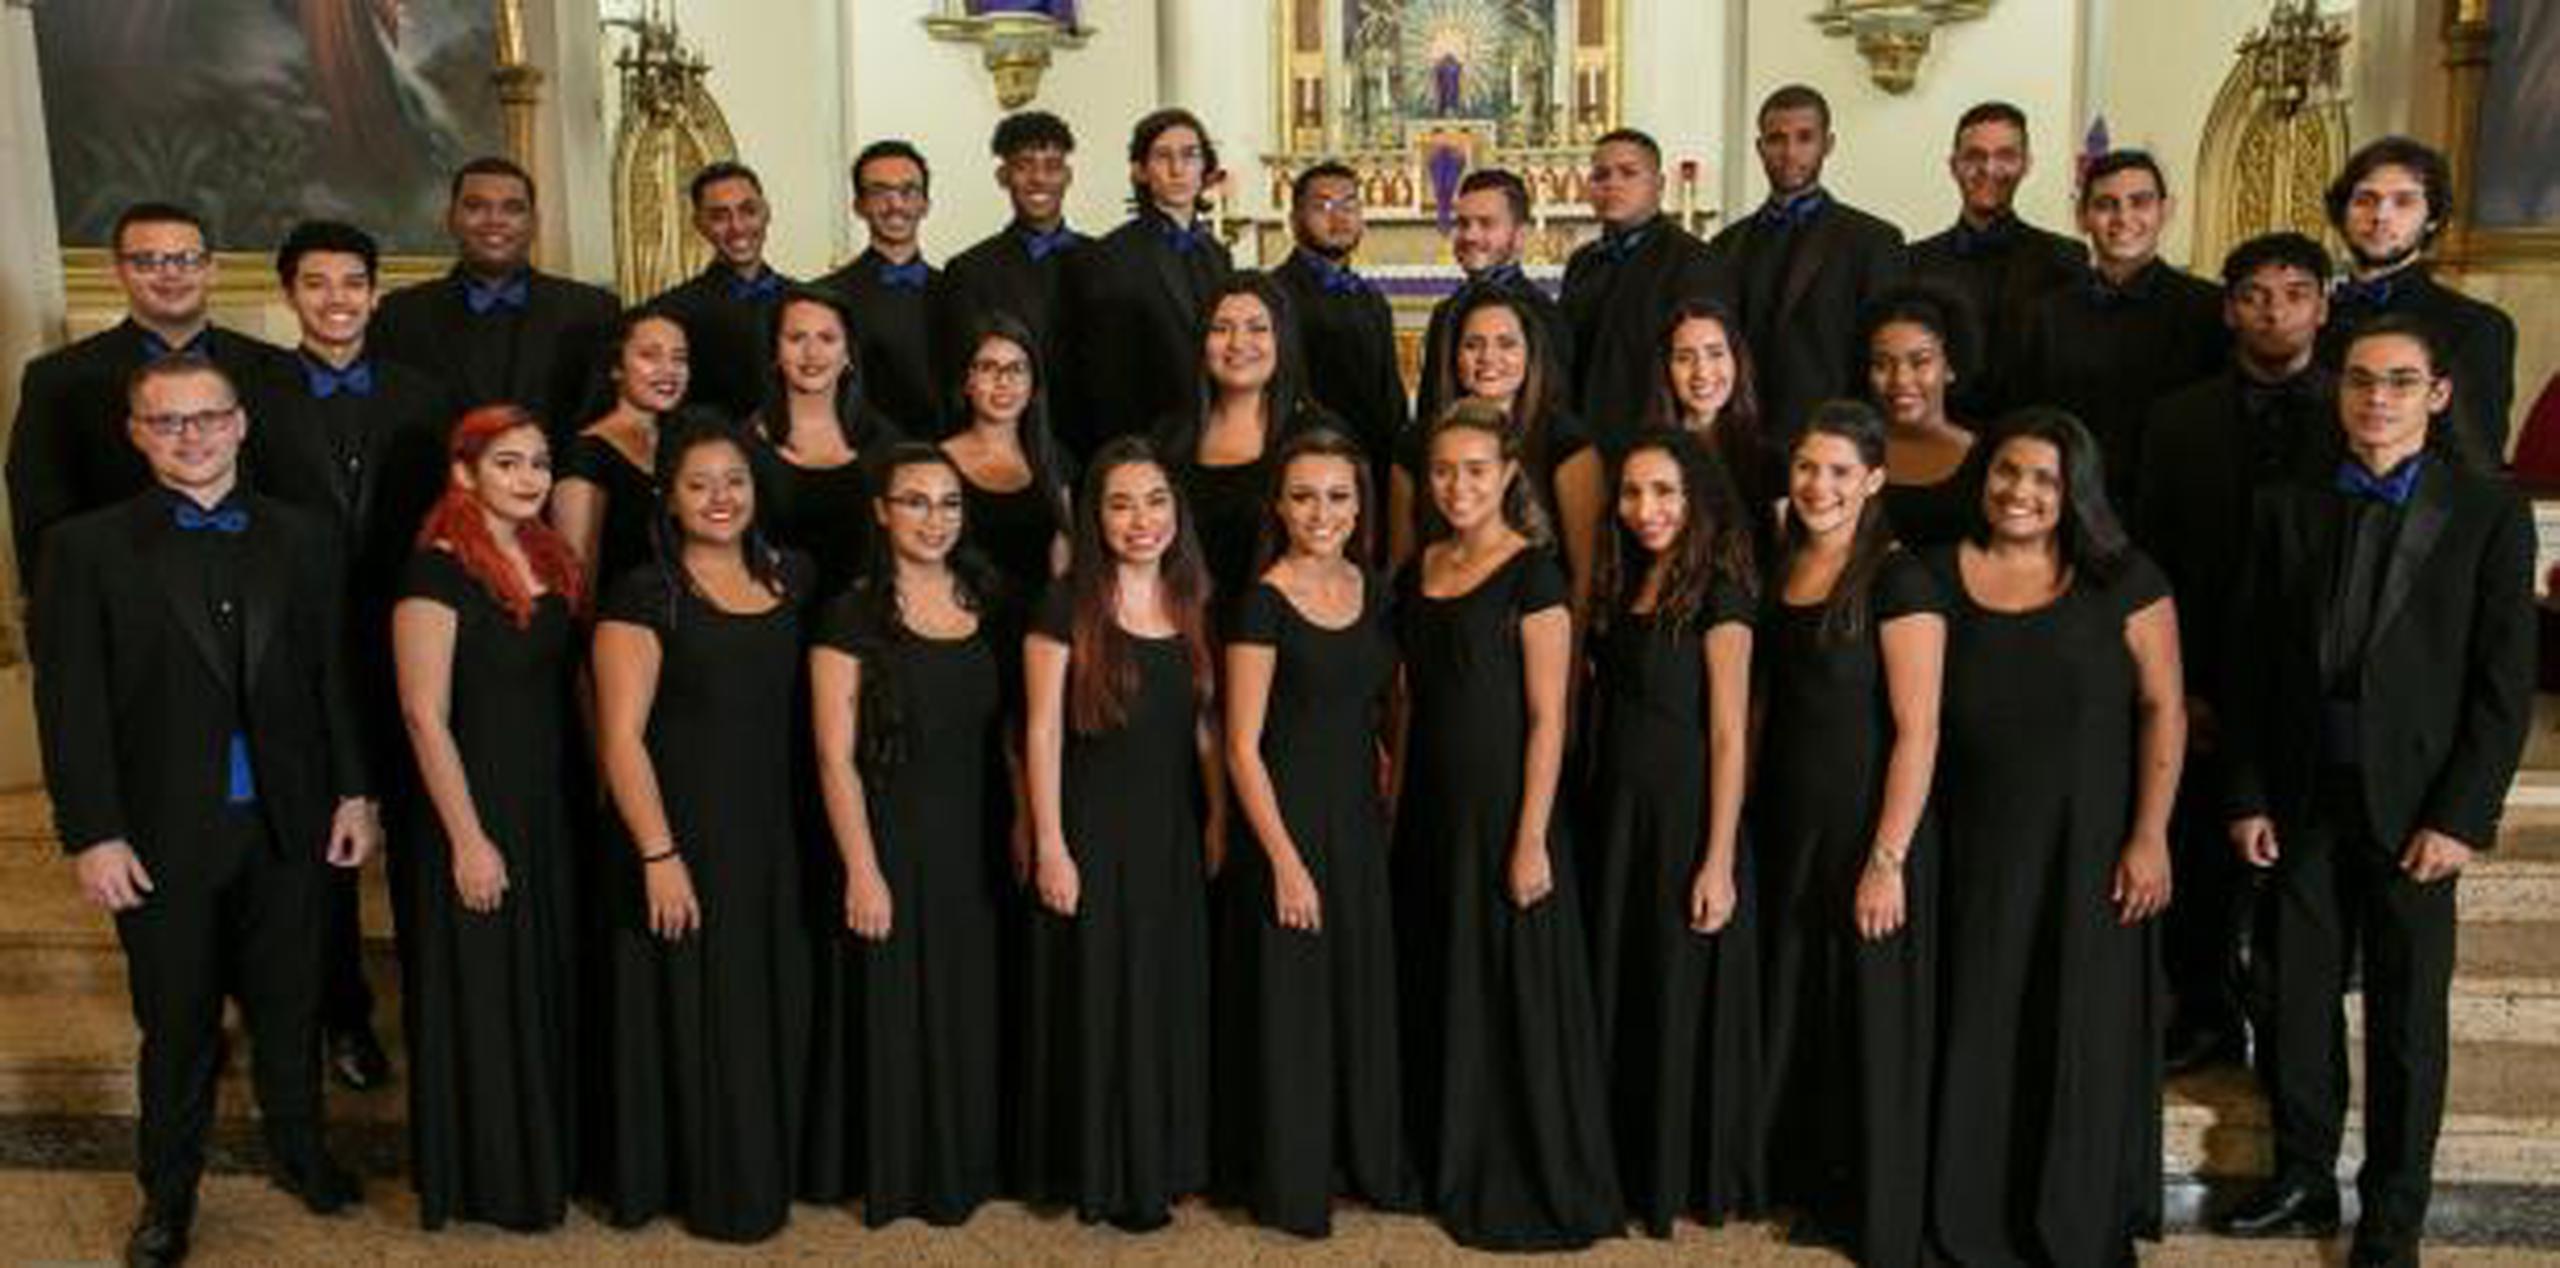 Los 33 estudiantes que componen el Coro de Cámara disfrutarían de una semana de talleres y canto coral junto con otras corales de Alemania, Uruguay, México y Argentina. (Suministrada)